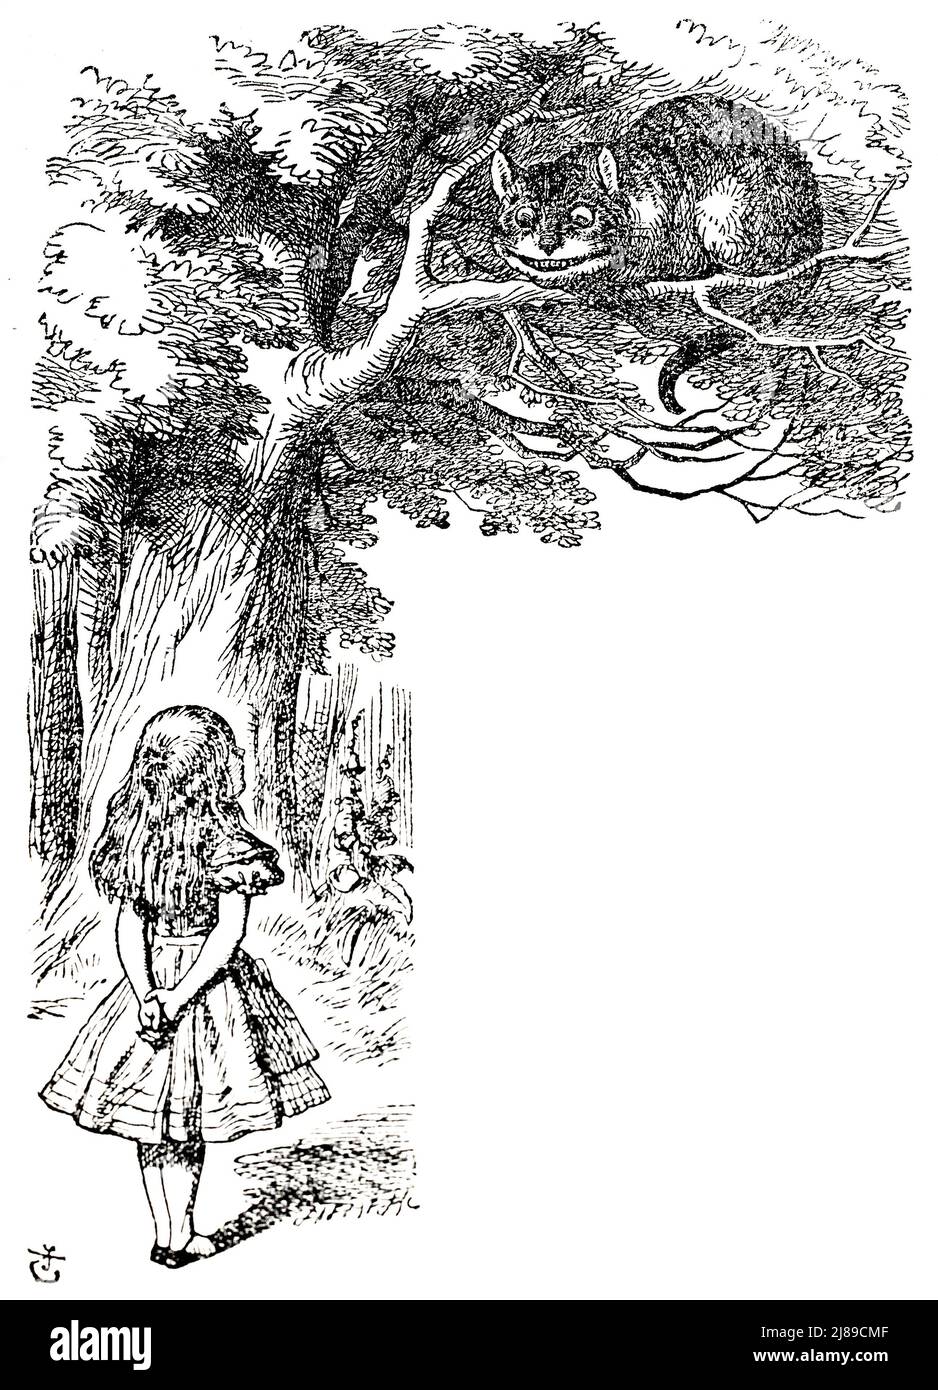 John Tenniel ilustración del gato Cheshire de Alice in Wonderland de Lewis Carroll Foto de stock